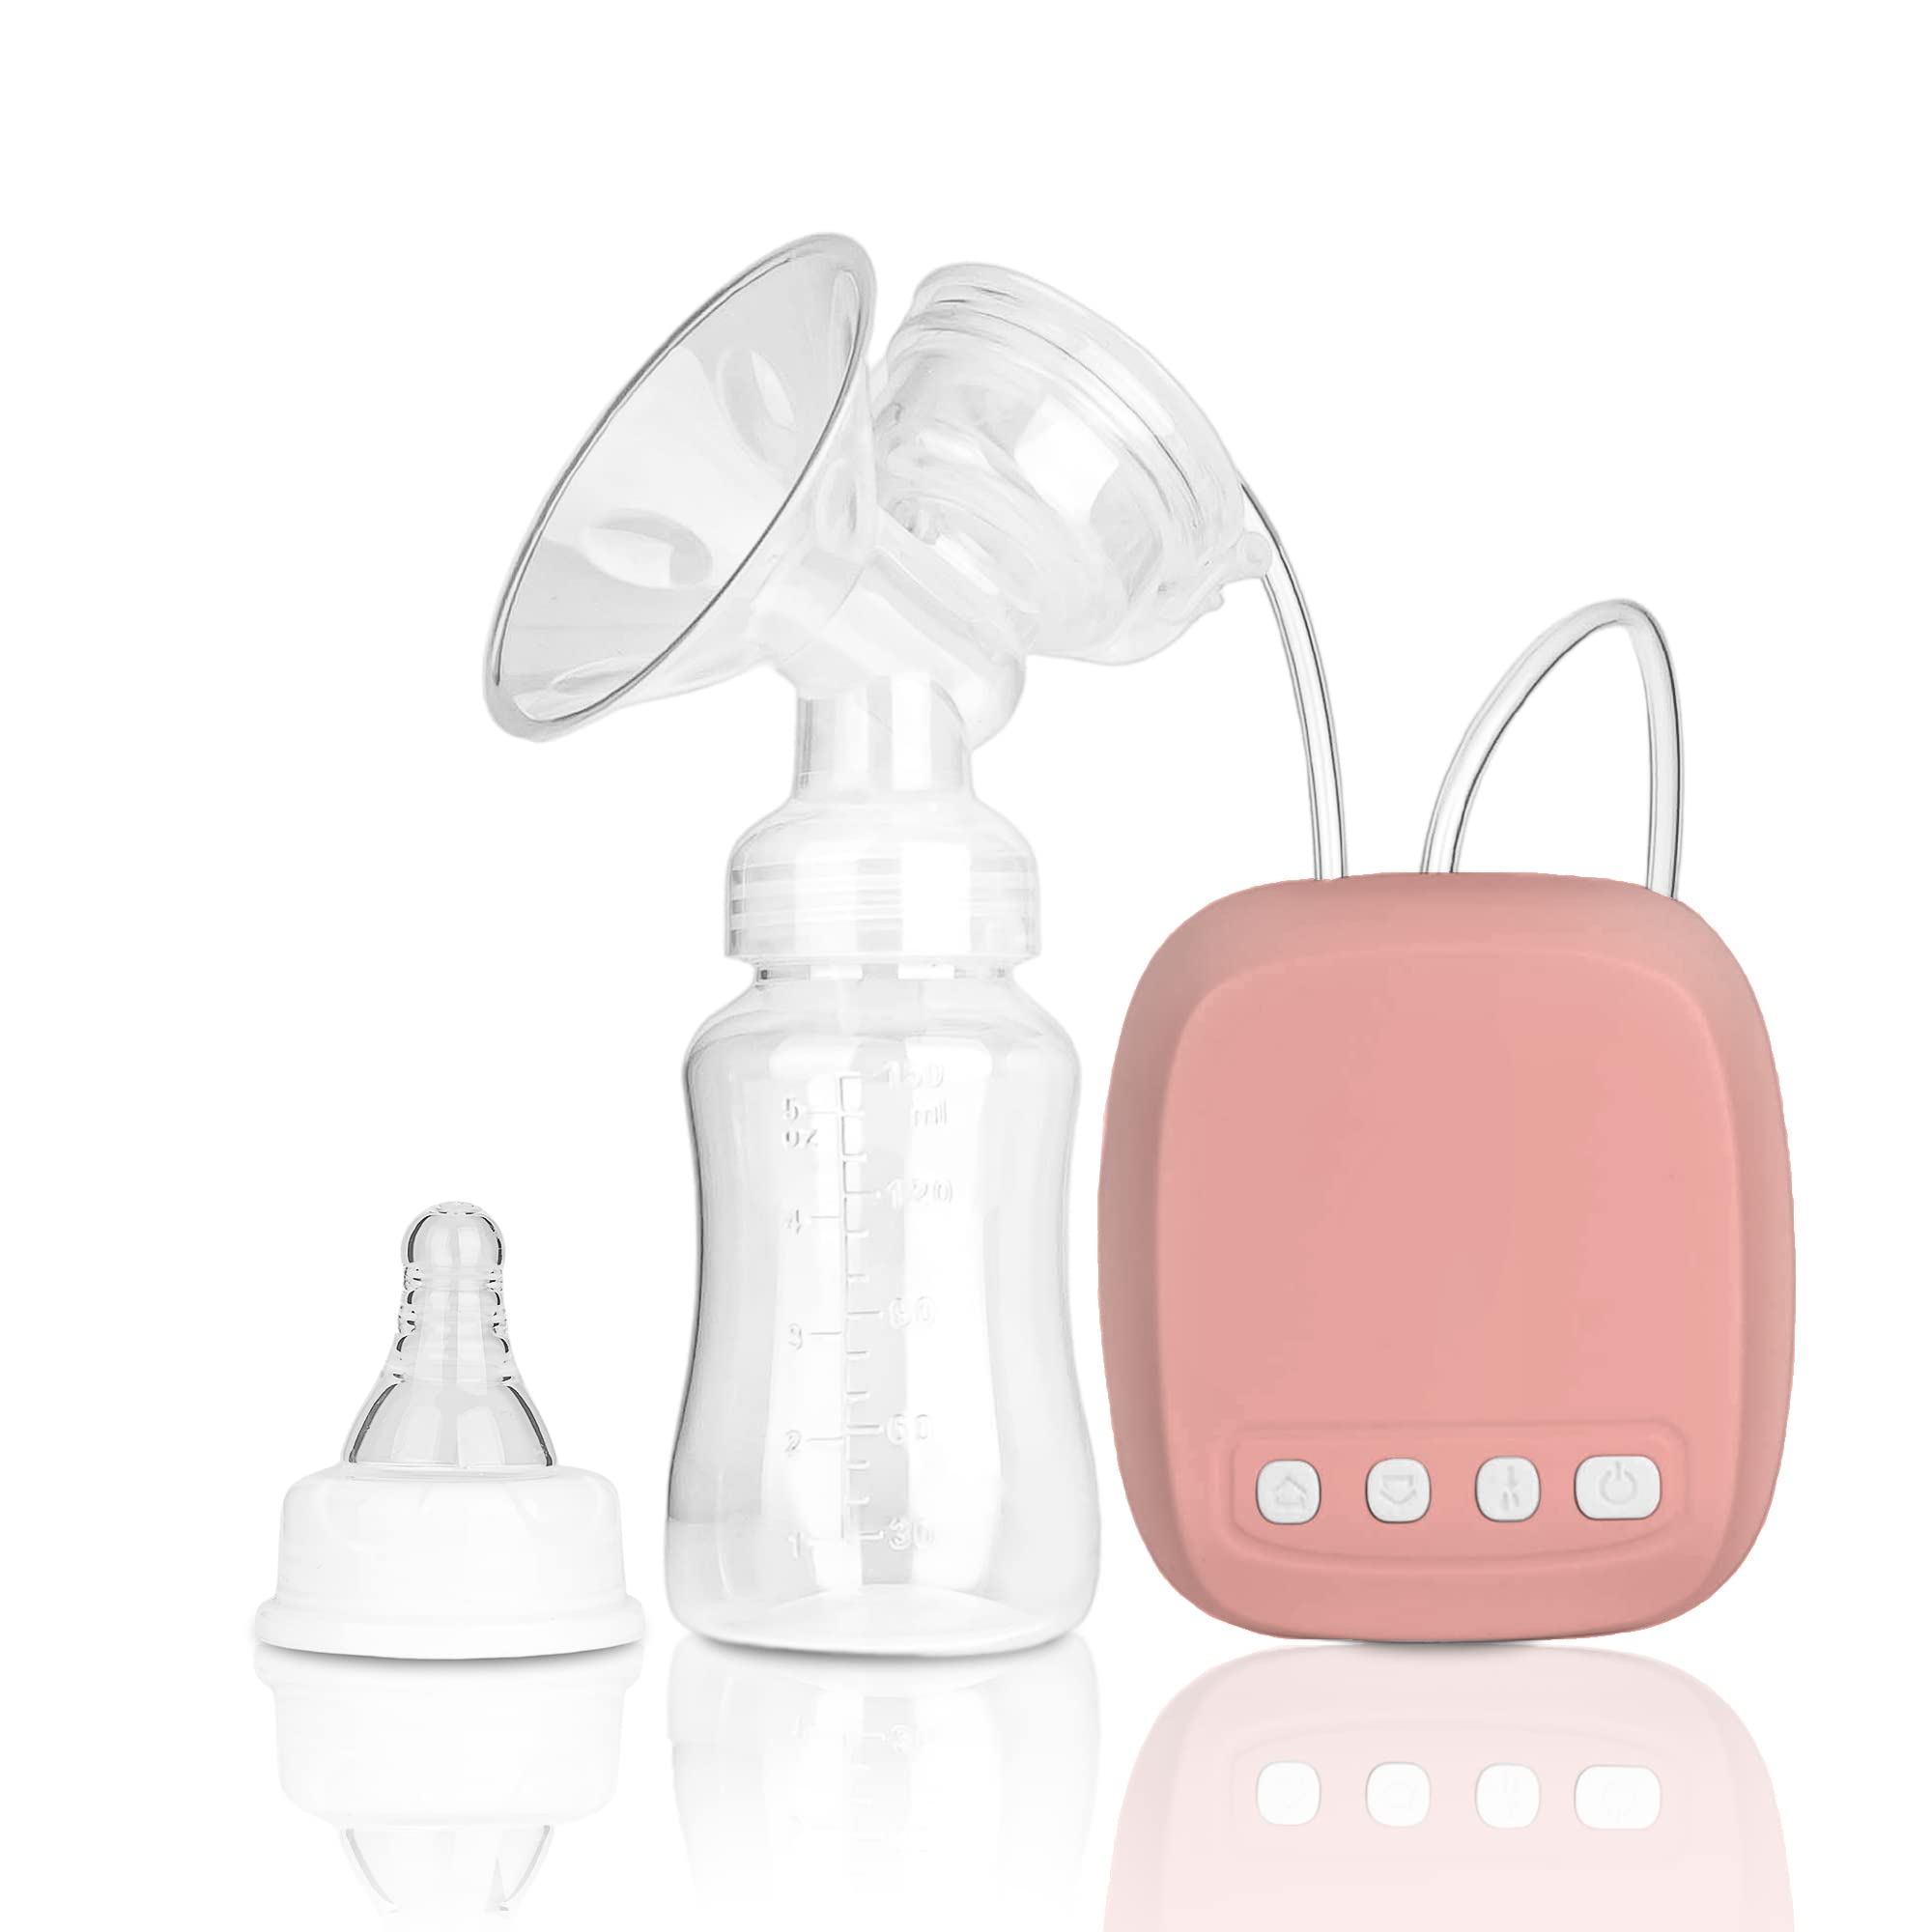 kidoo - Elektrische Milchpumpe - Tragbar, Sanft und Schnell - Funktioniert nur Eingesteckt - USB-Anschluss, Ultra-leise Milchpumpe für Unterwegs und Zu Hause (Rosa)